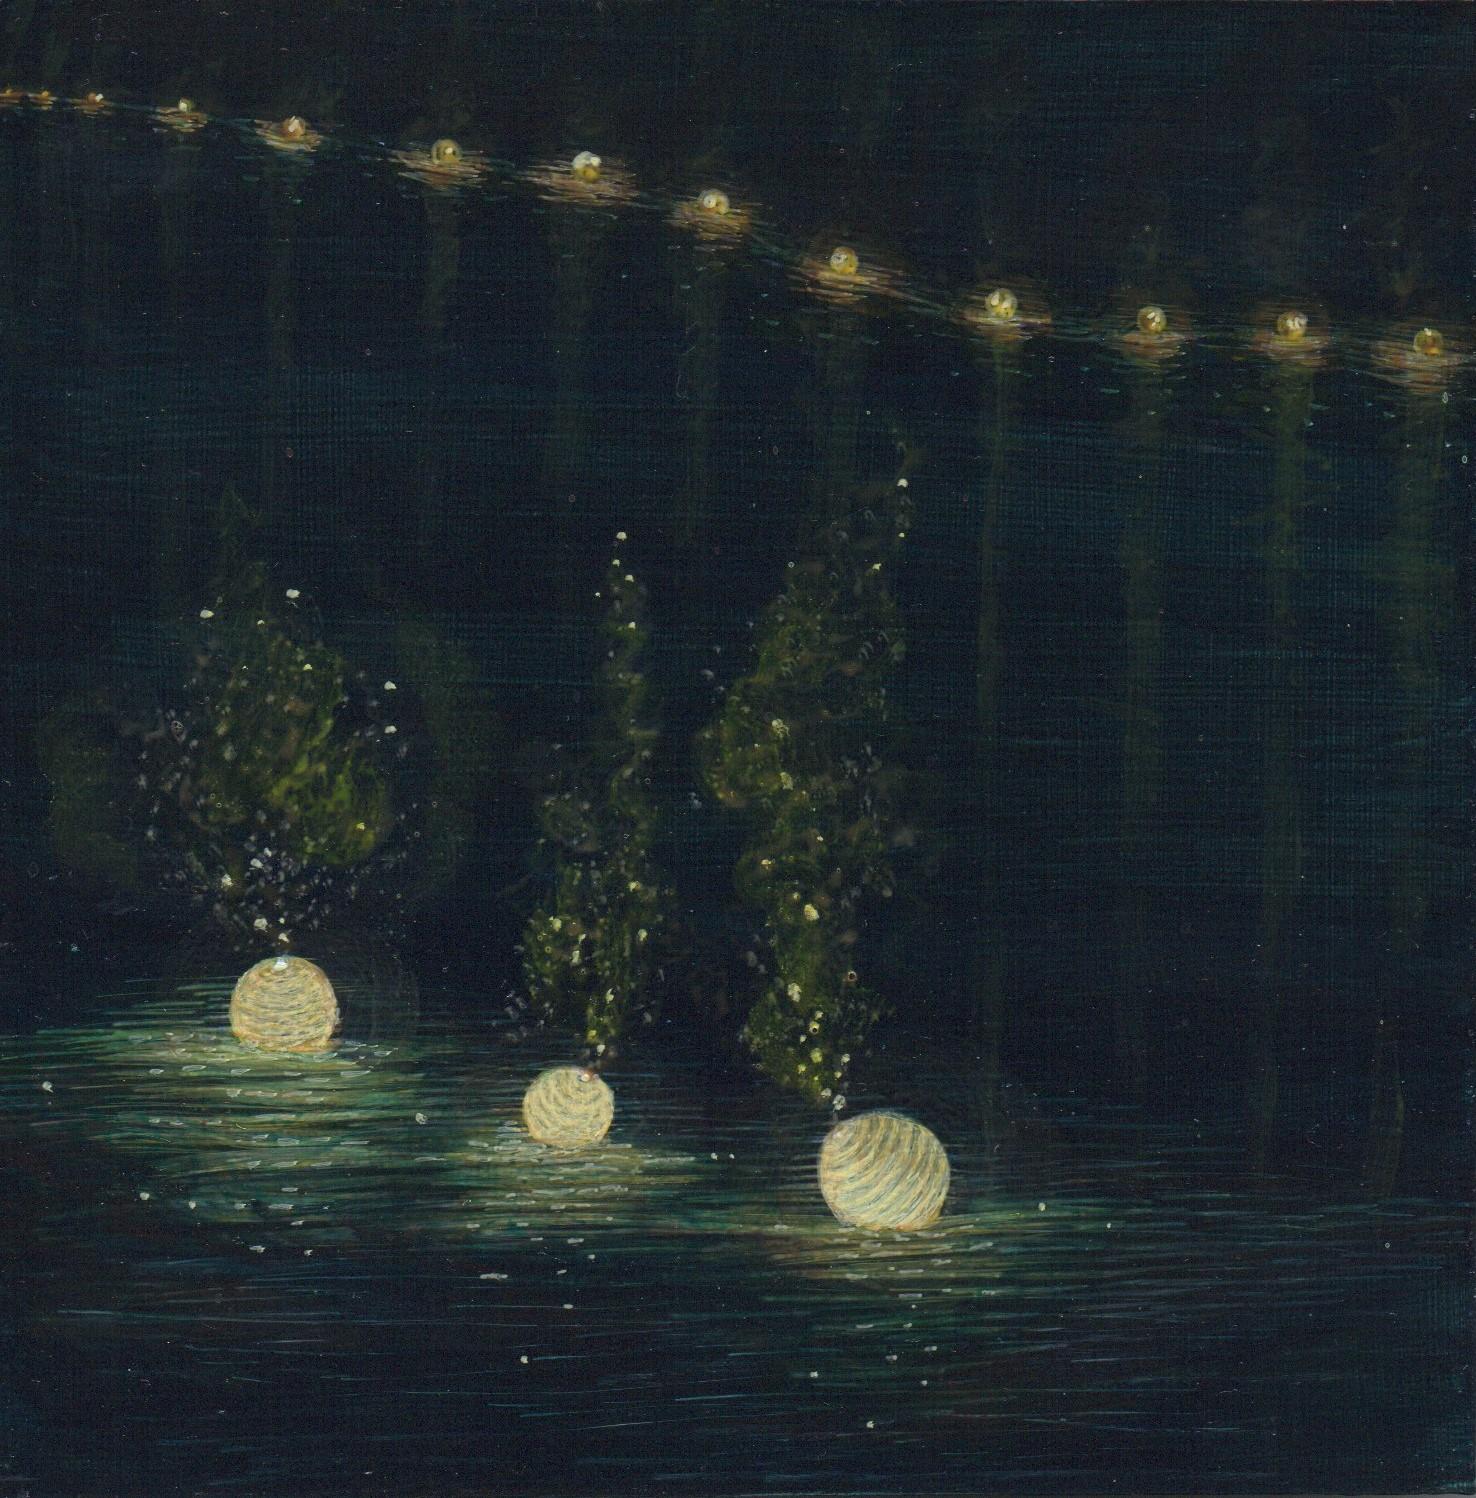 Ocean Pass, Illuminated Paper Lanterns on Dark Water, Acrylic on Panel